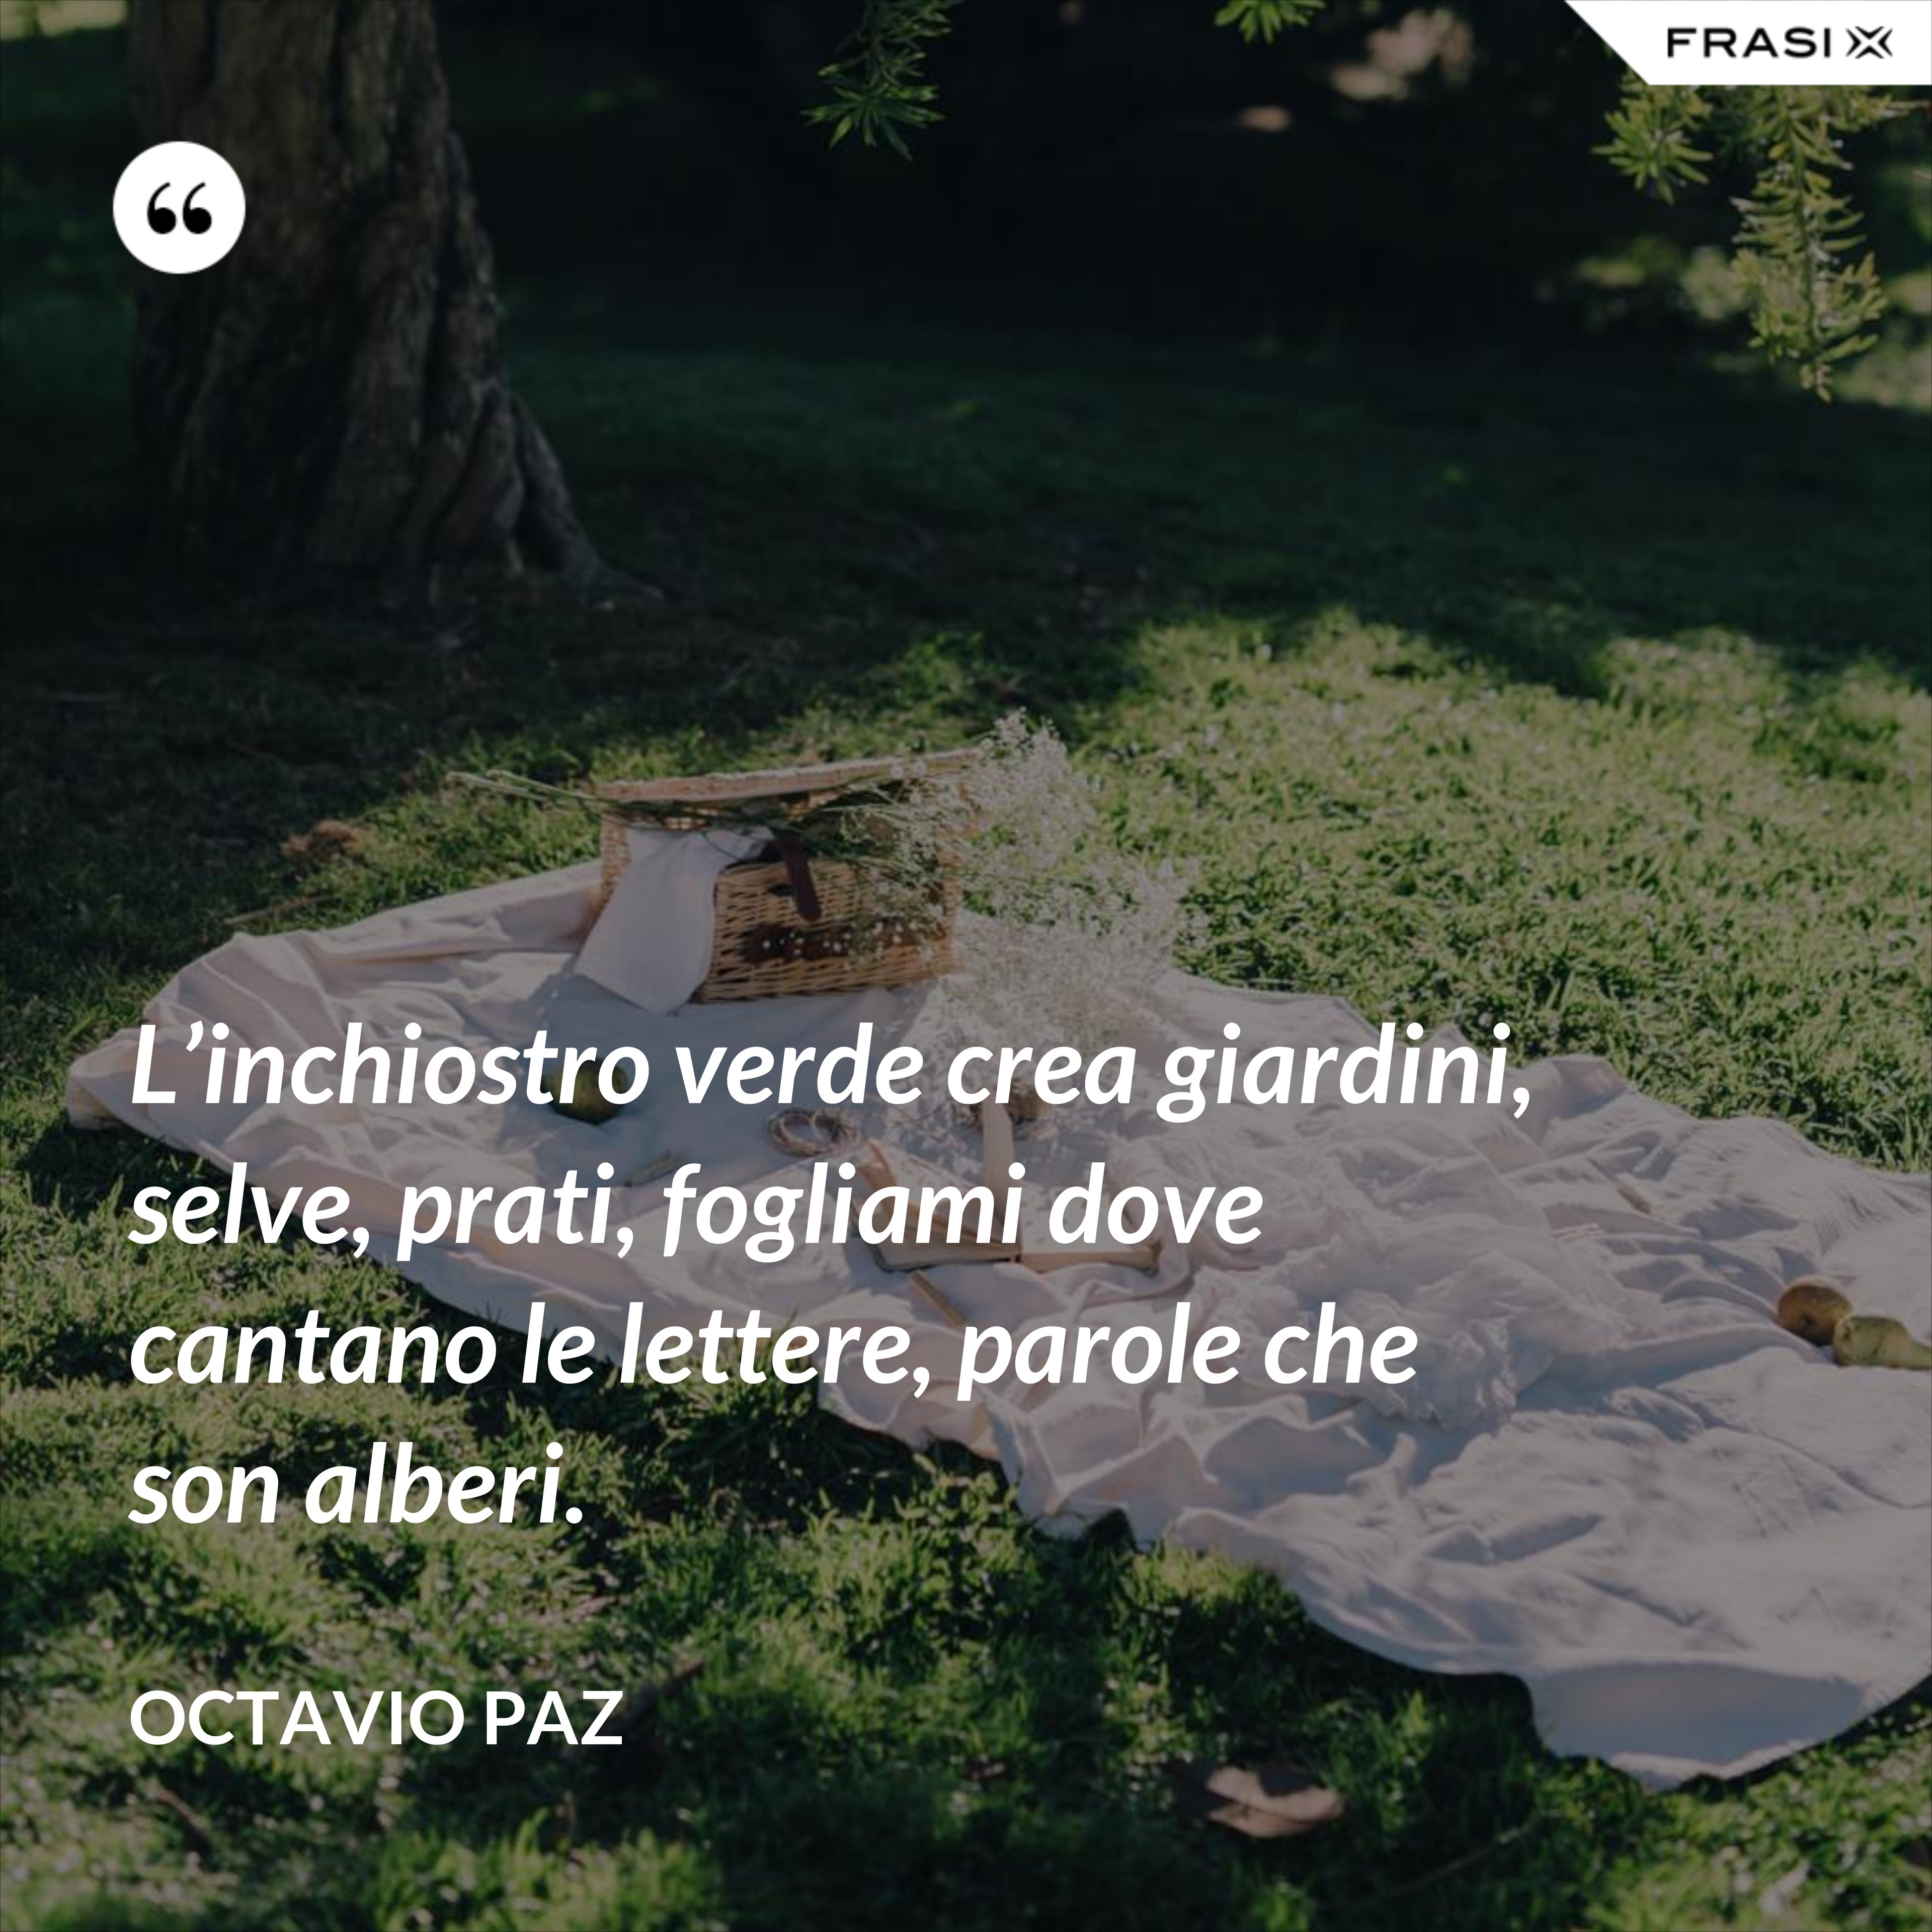 L’inchiostro verde crea giardini, selve, prati, fogliami dove cantano le lettere, parole che son alberi. - Octavio Paz